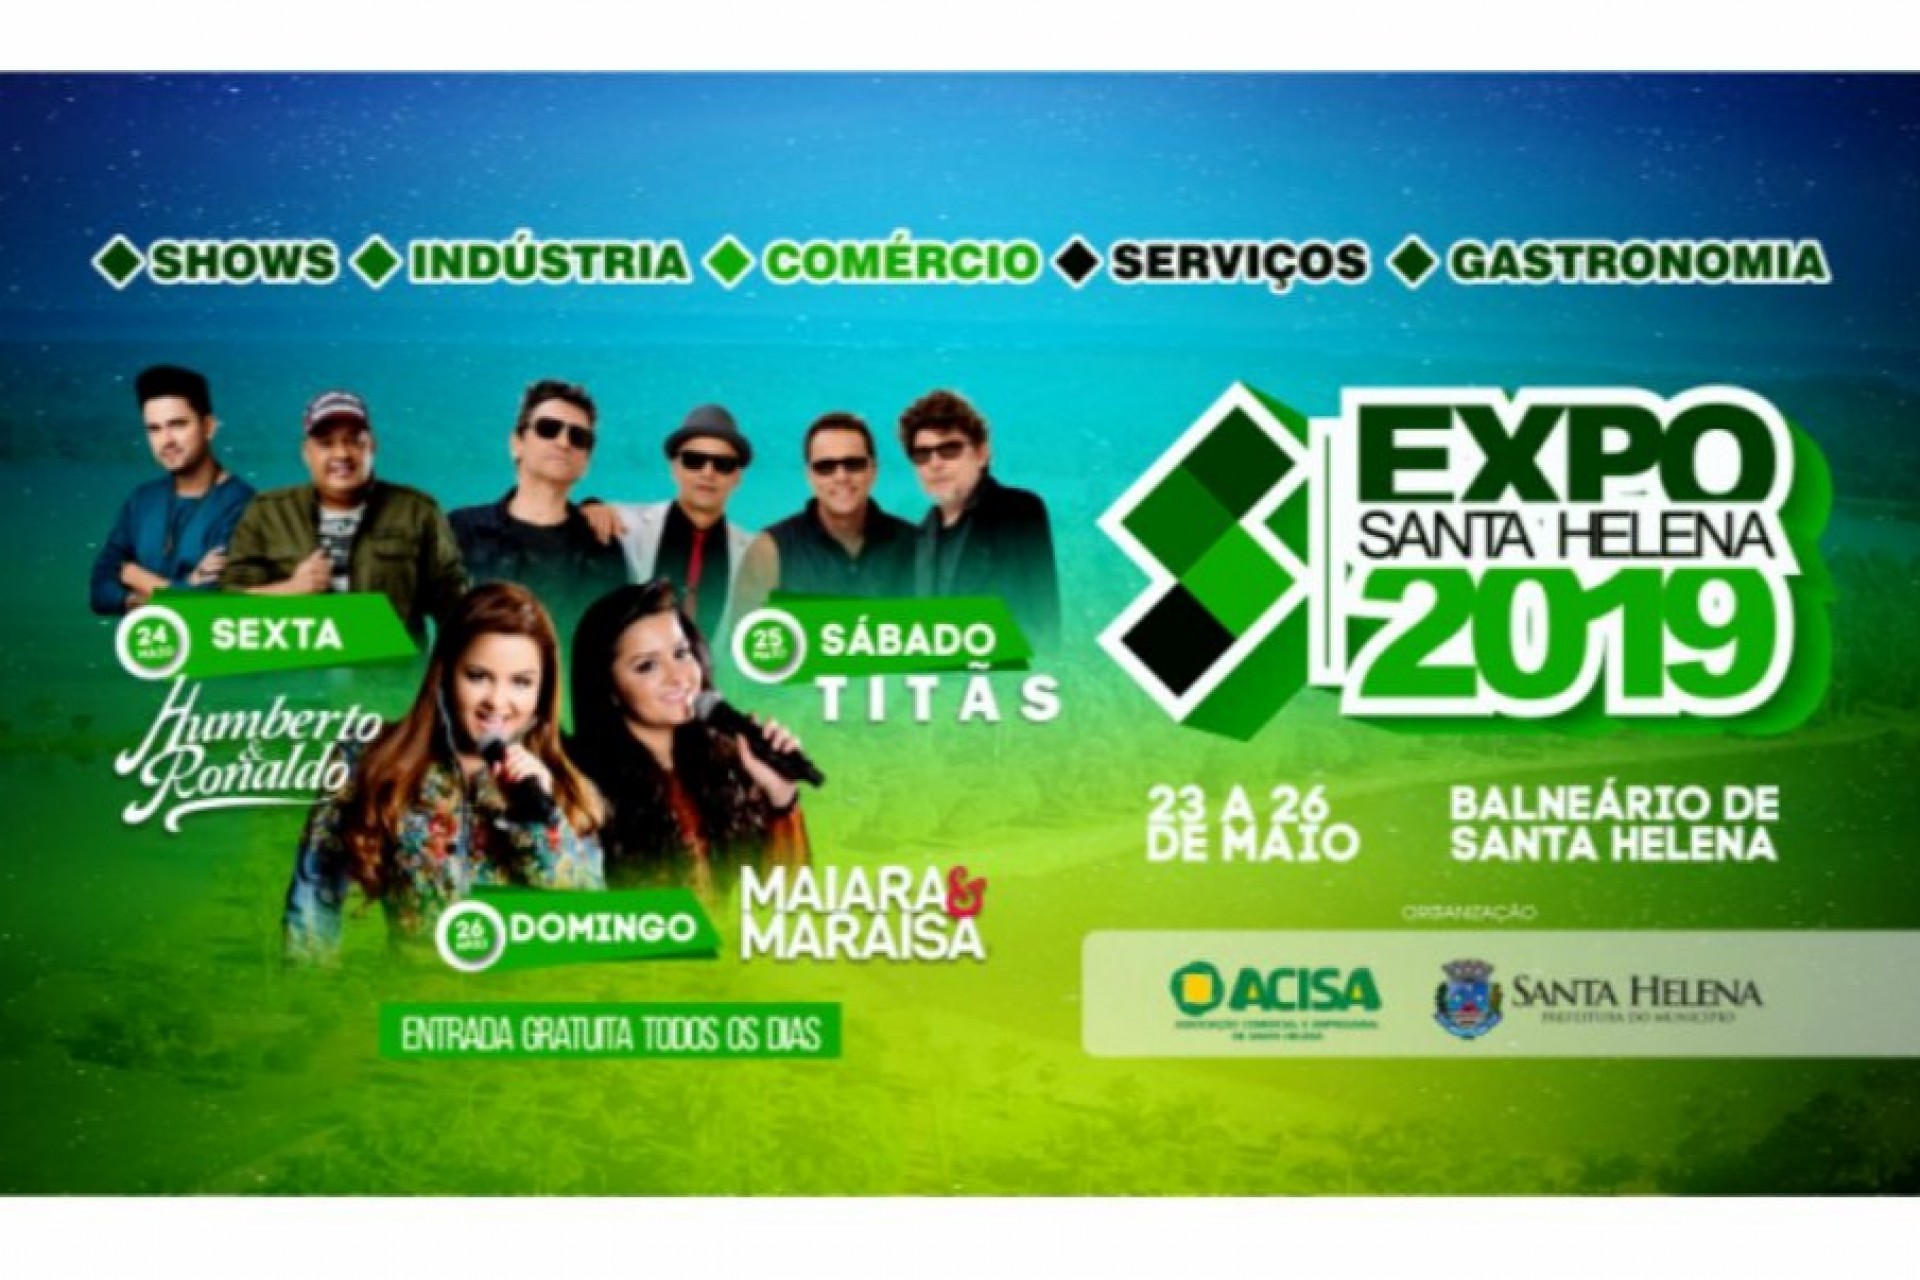 Expo Santa Helena 2019 é lançada oficialmente